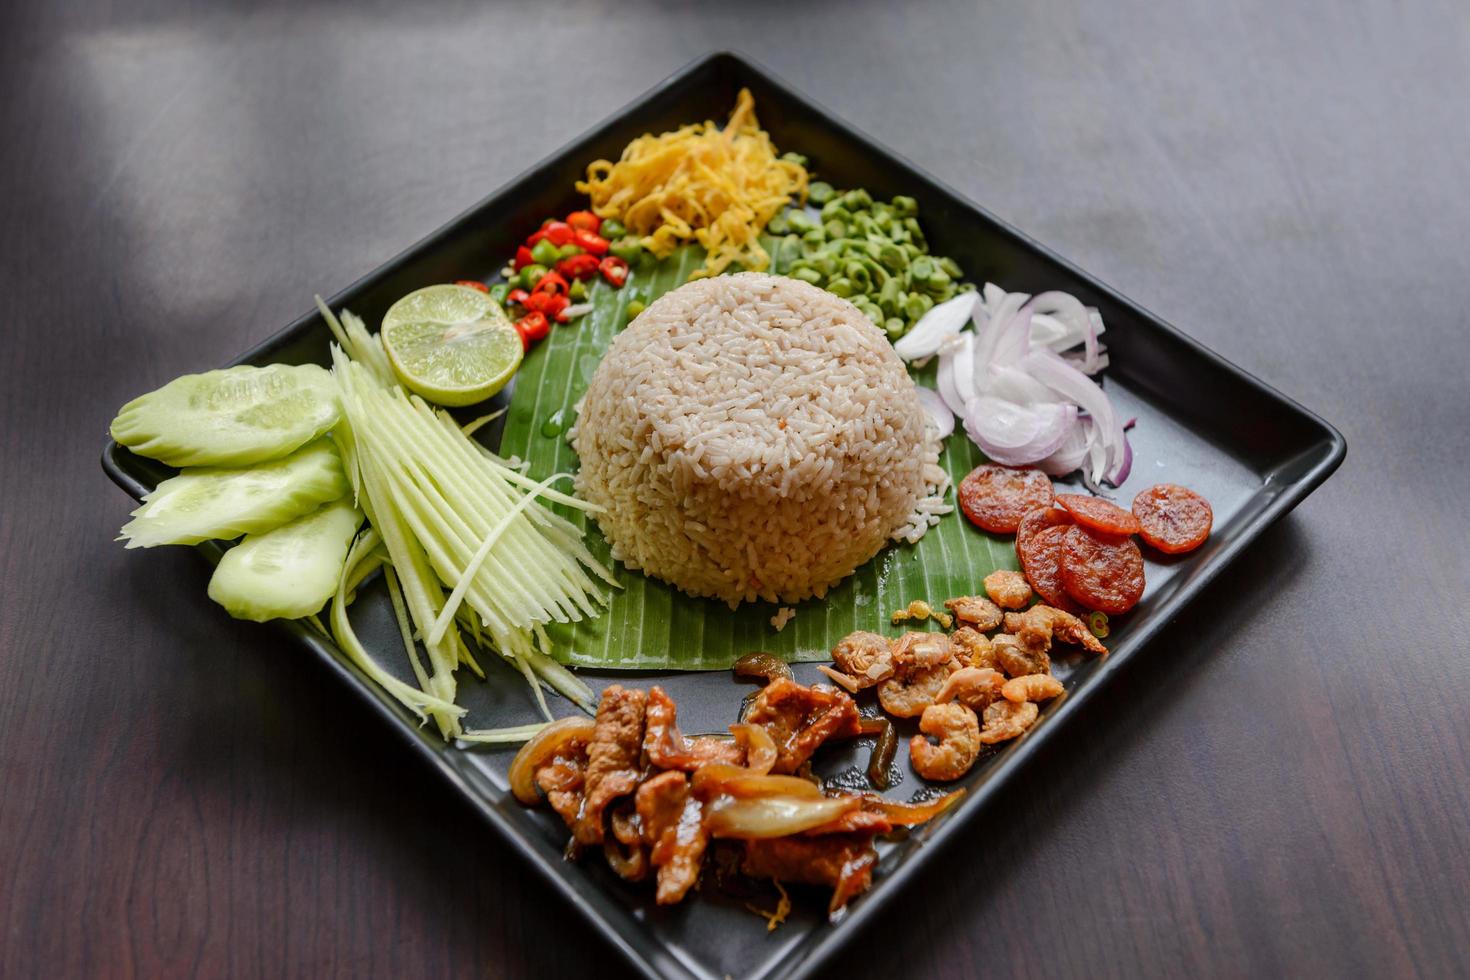 thailändisches Essen - Reis gemischt mit Garnelenpaste, Kao cluk ka pi mit Beilage als Mango, Zitrone, Chili, Gurke, Rührei, Kuherbse, Schalotten, chinesischer Wurst, getrockneten Garnelen und Schweinefleisch foto